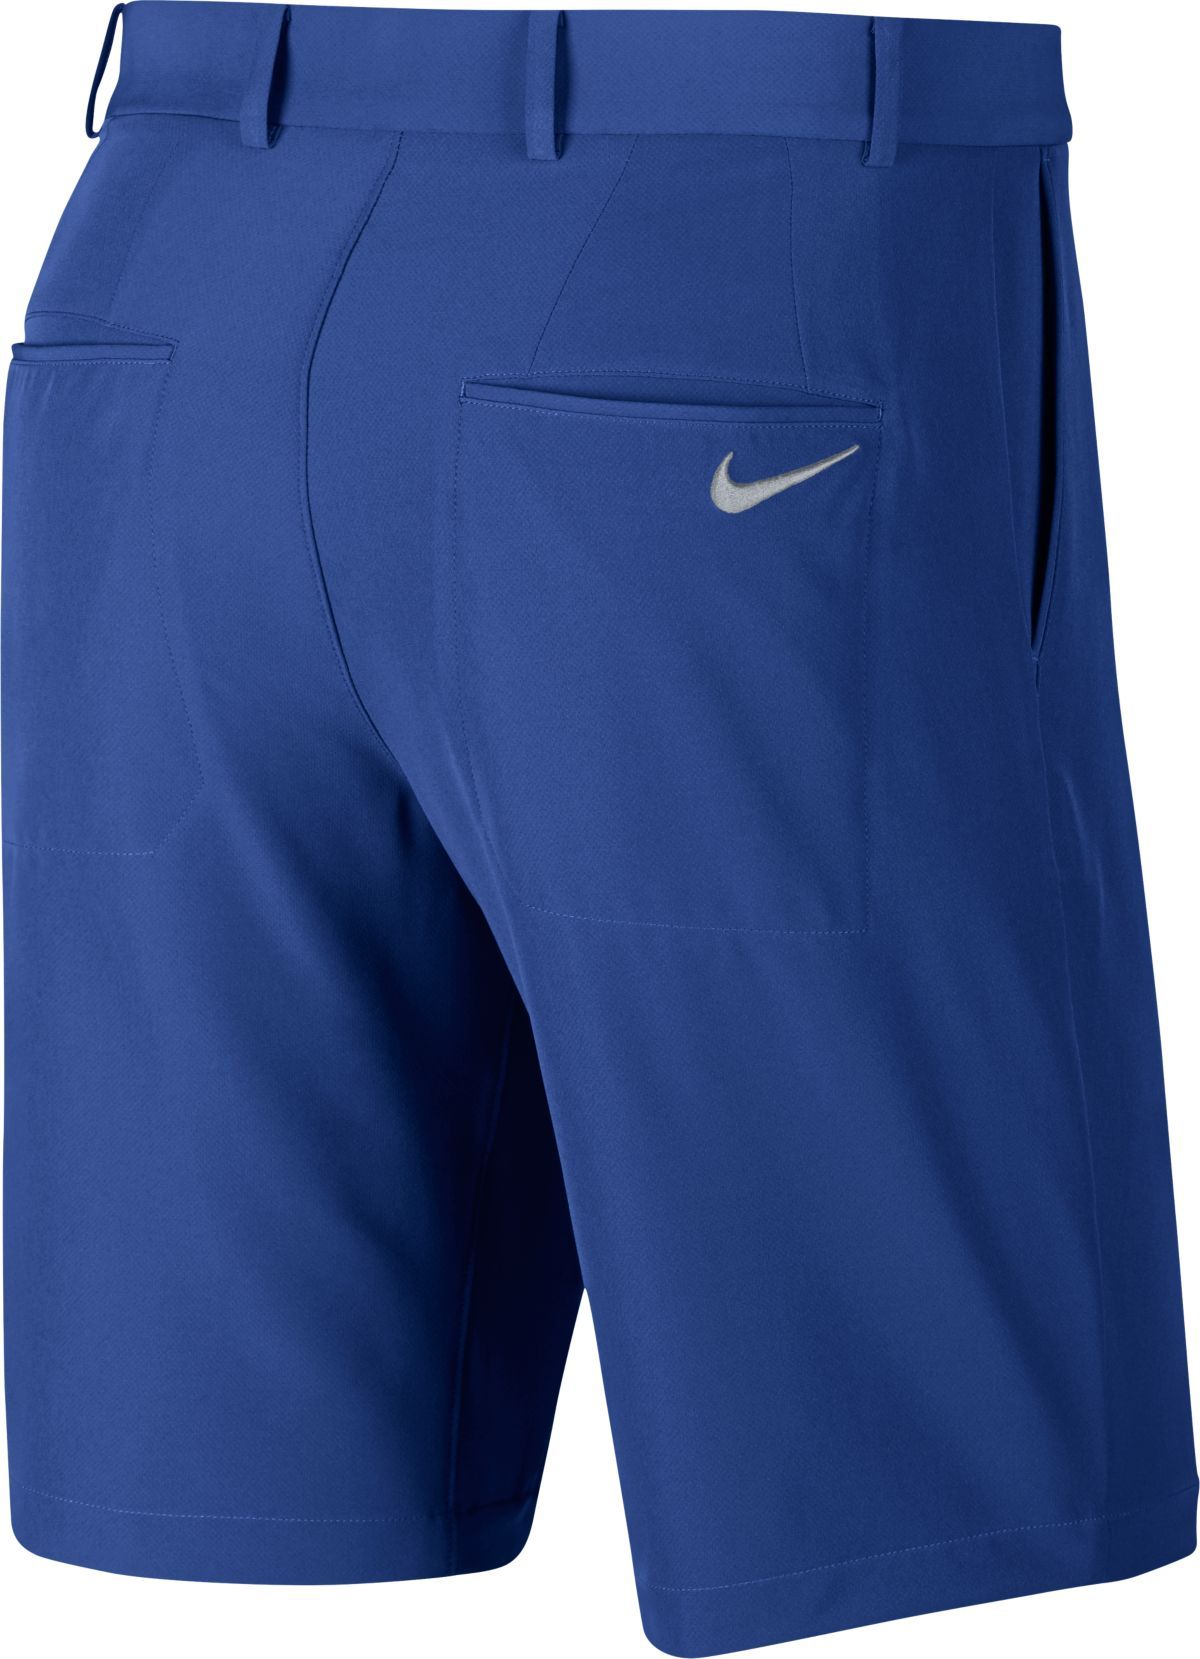 Nike Flex Hybrid Shorts 921753